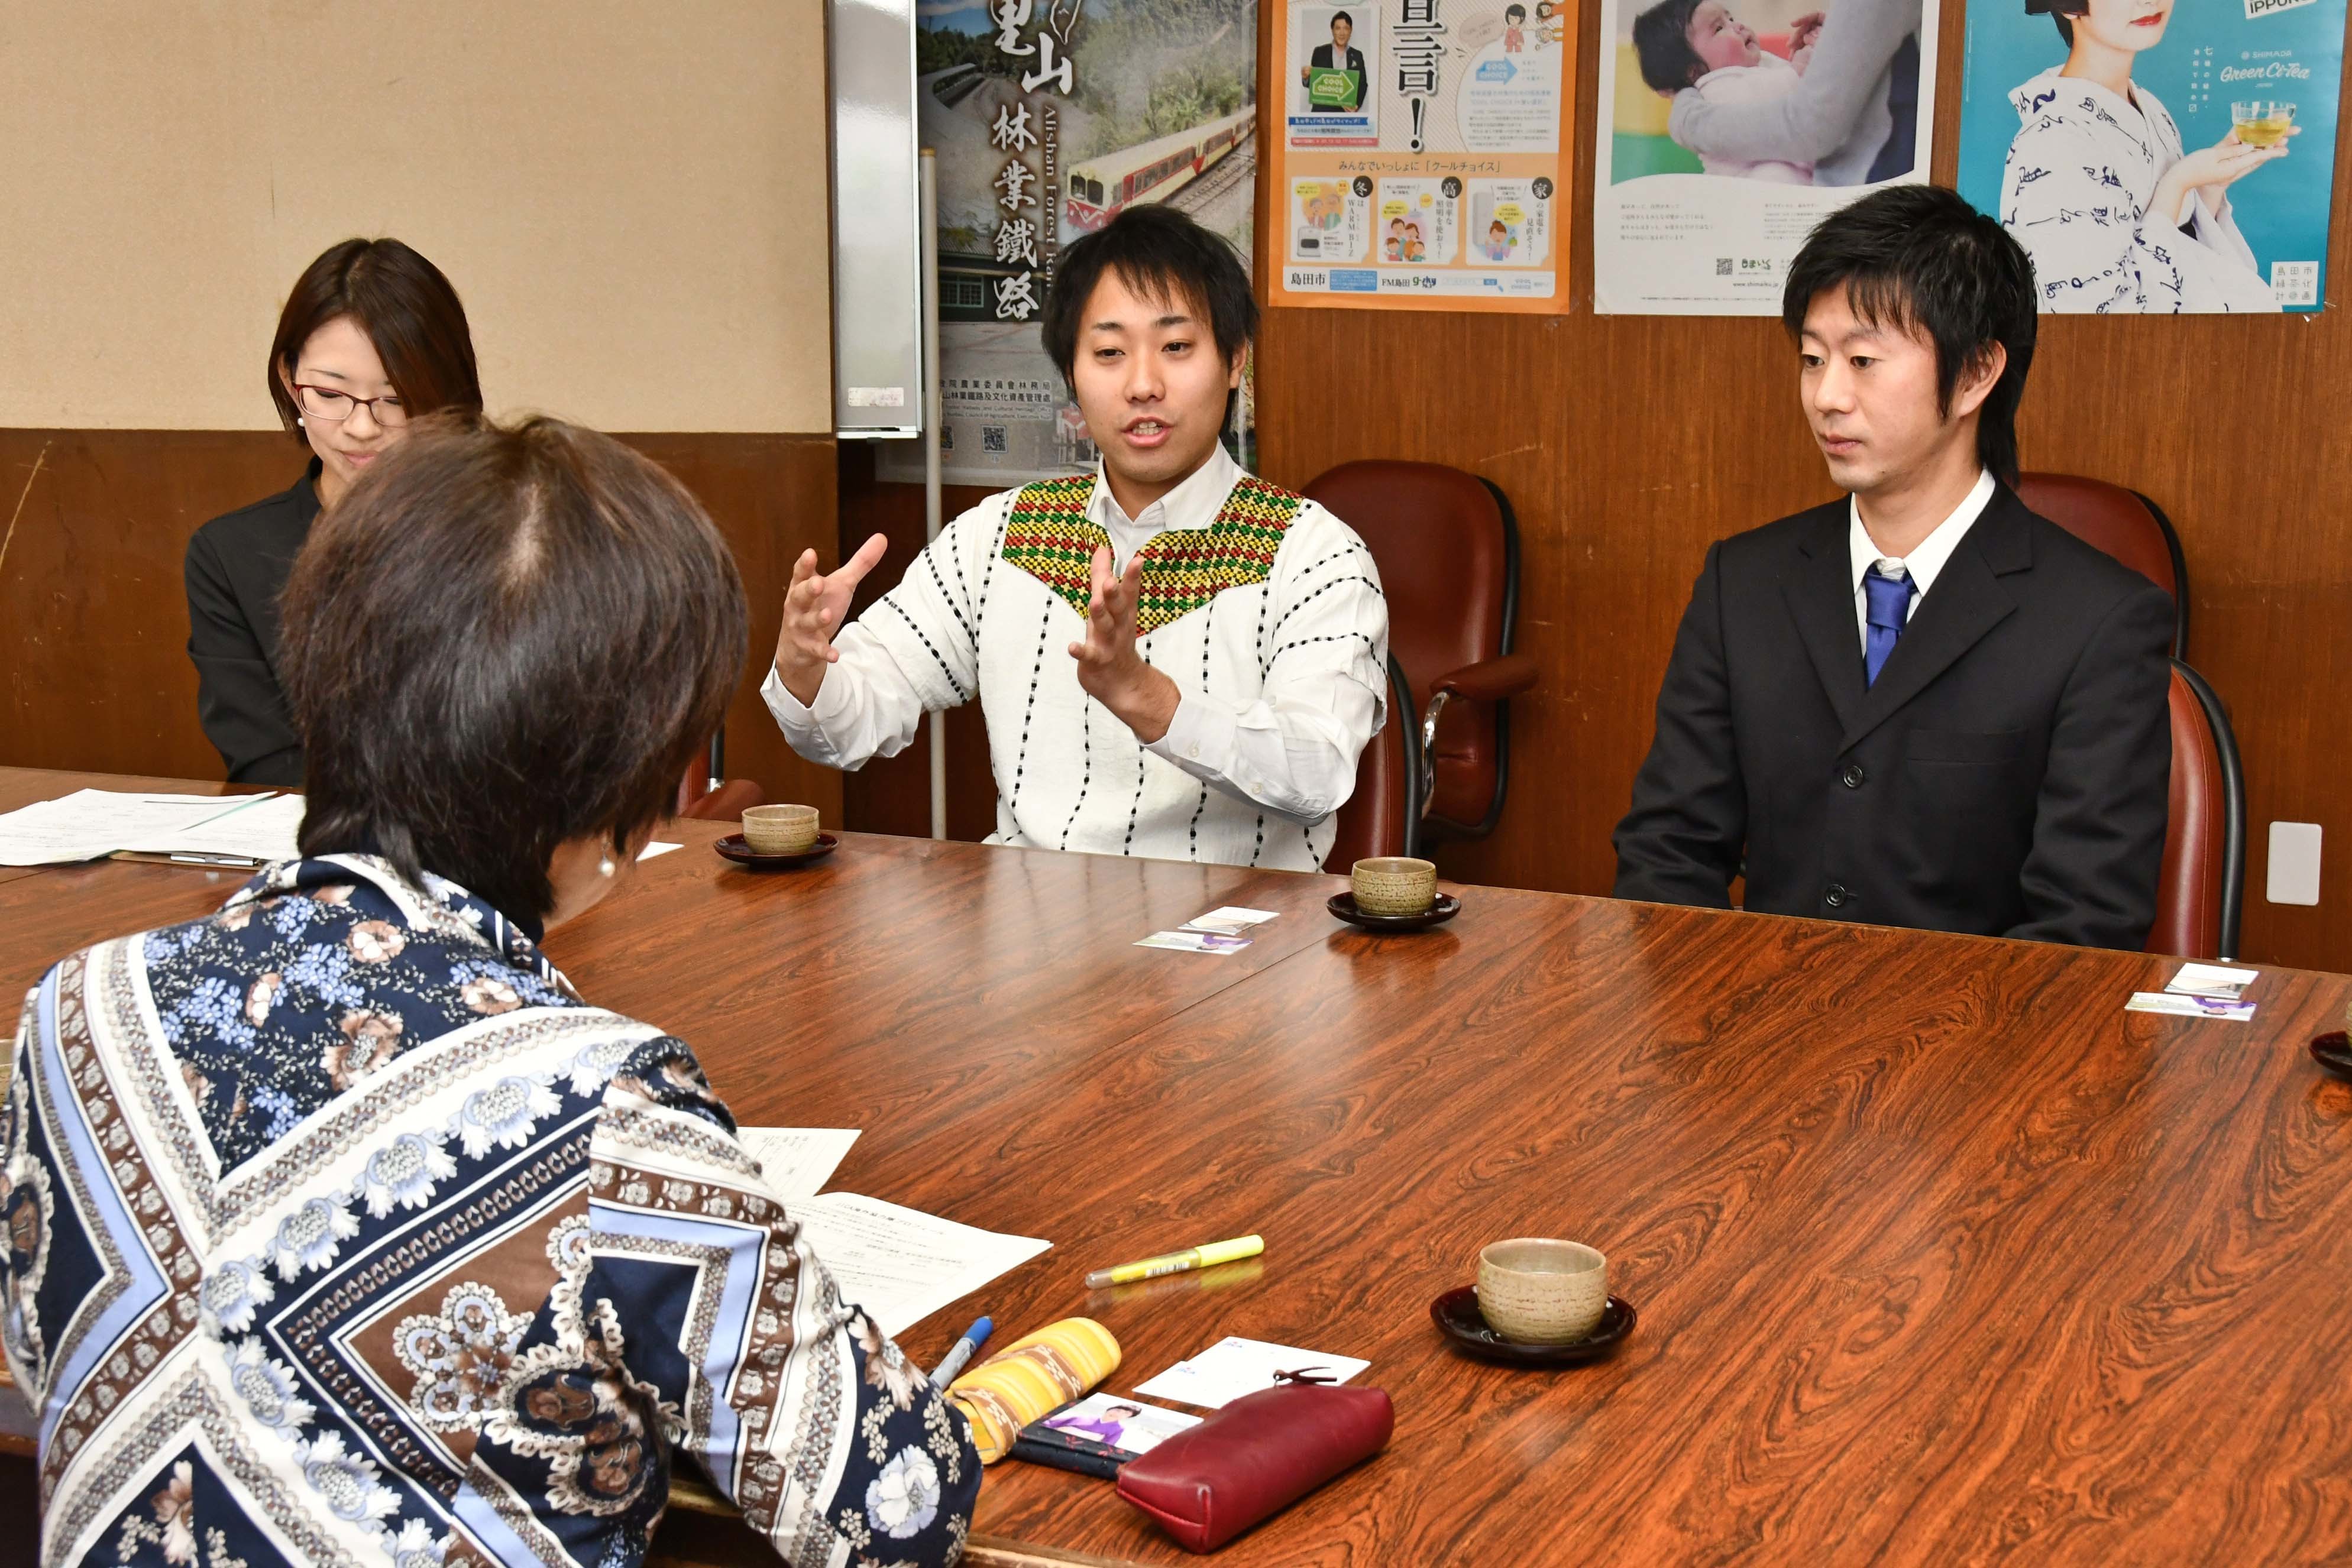 活動を経て経験したことを話す渡邉さん（中央）と仁科さん（右）